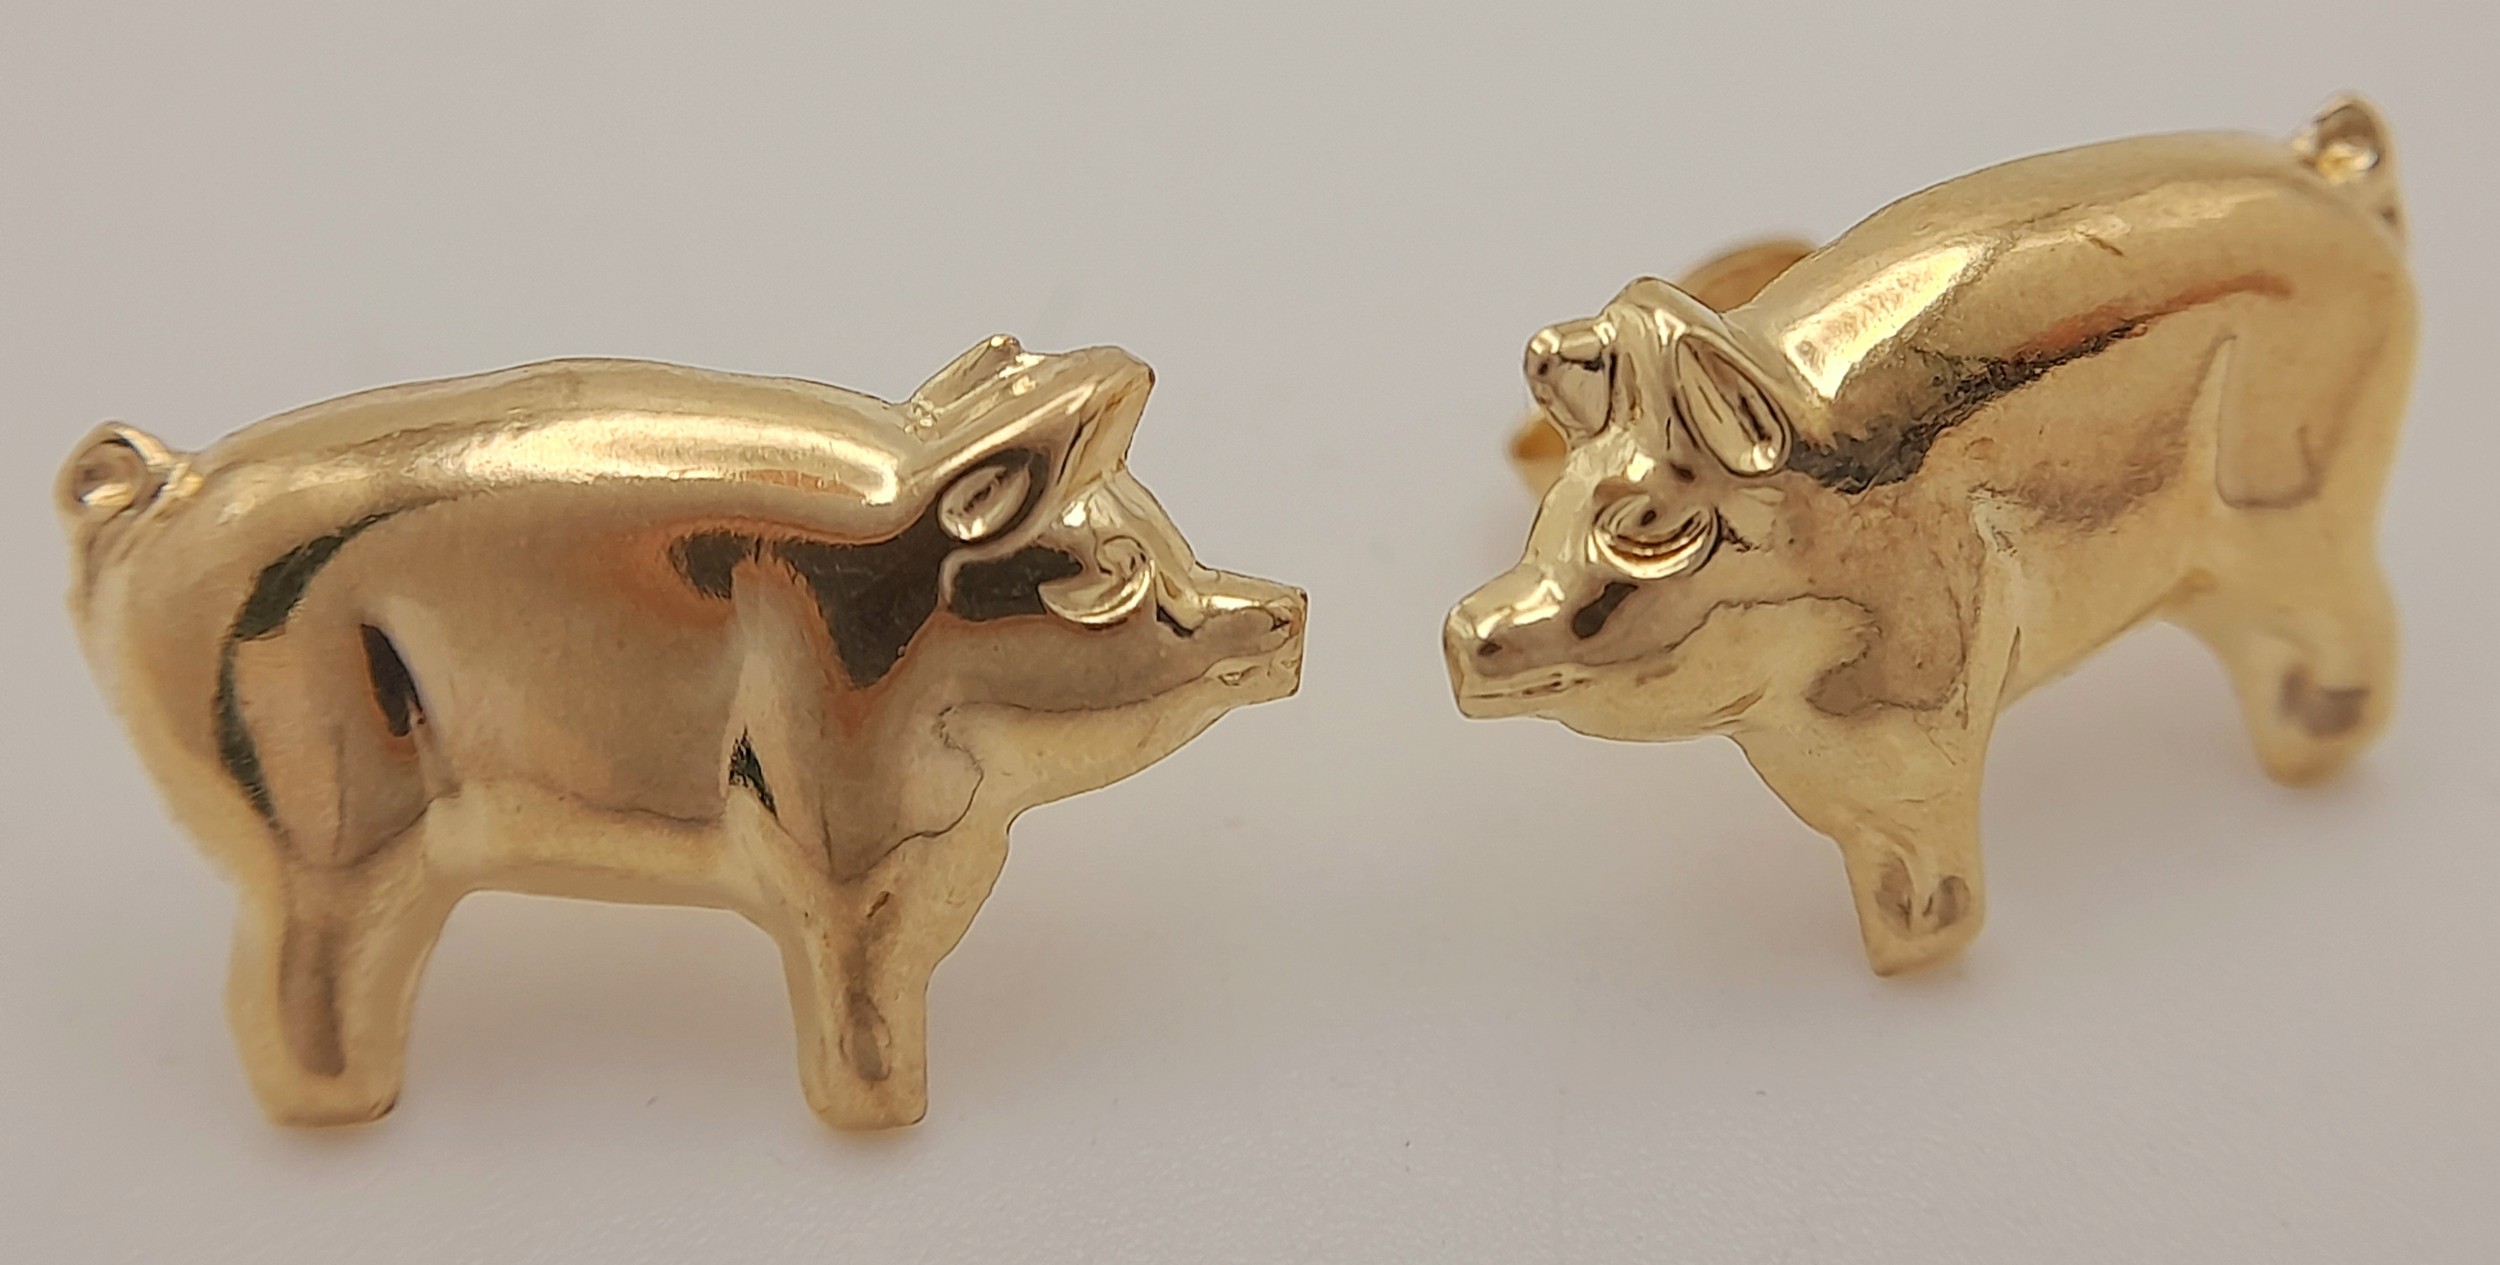 A Pair of 9K Yellow Gold Pig Stud Earrings. 15mm. Ref: 68401N